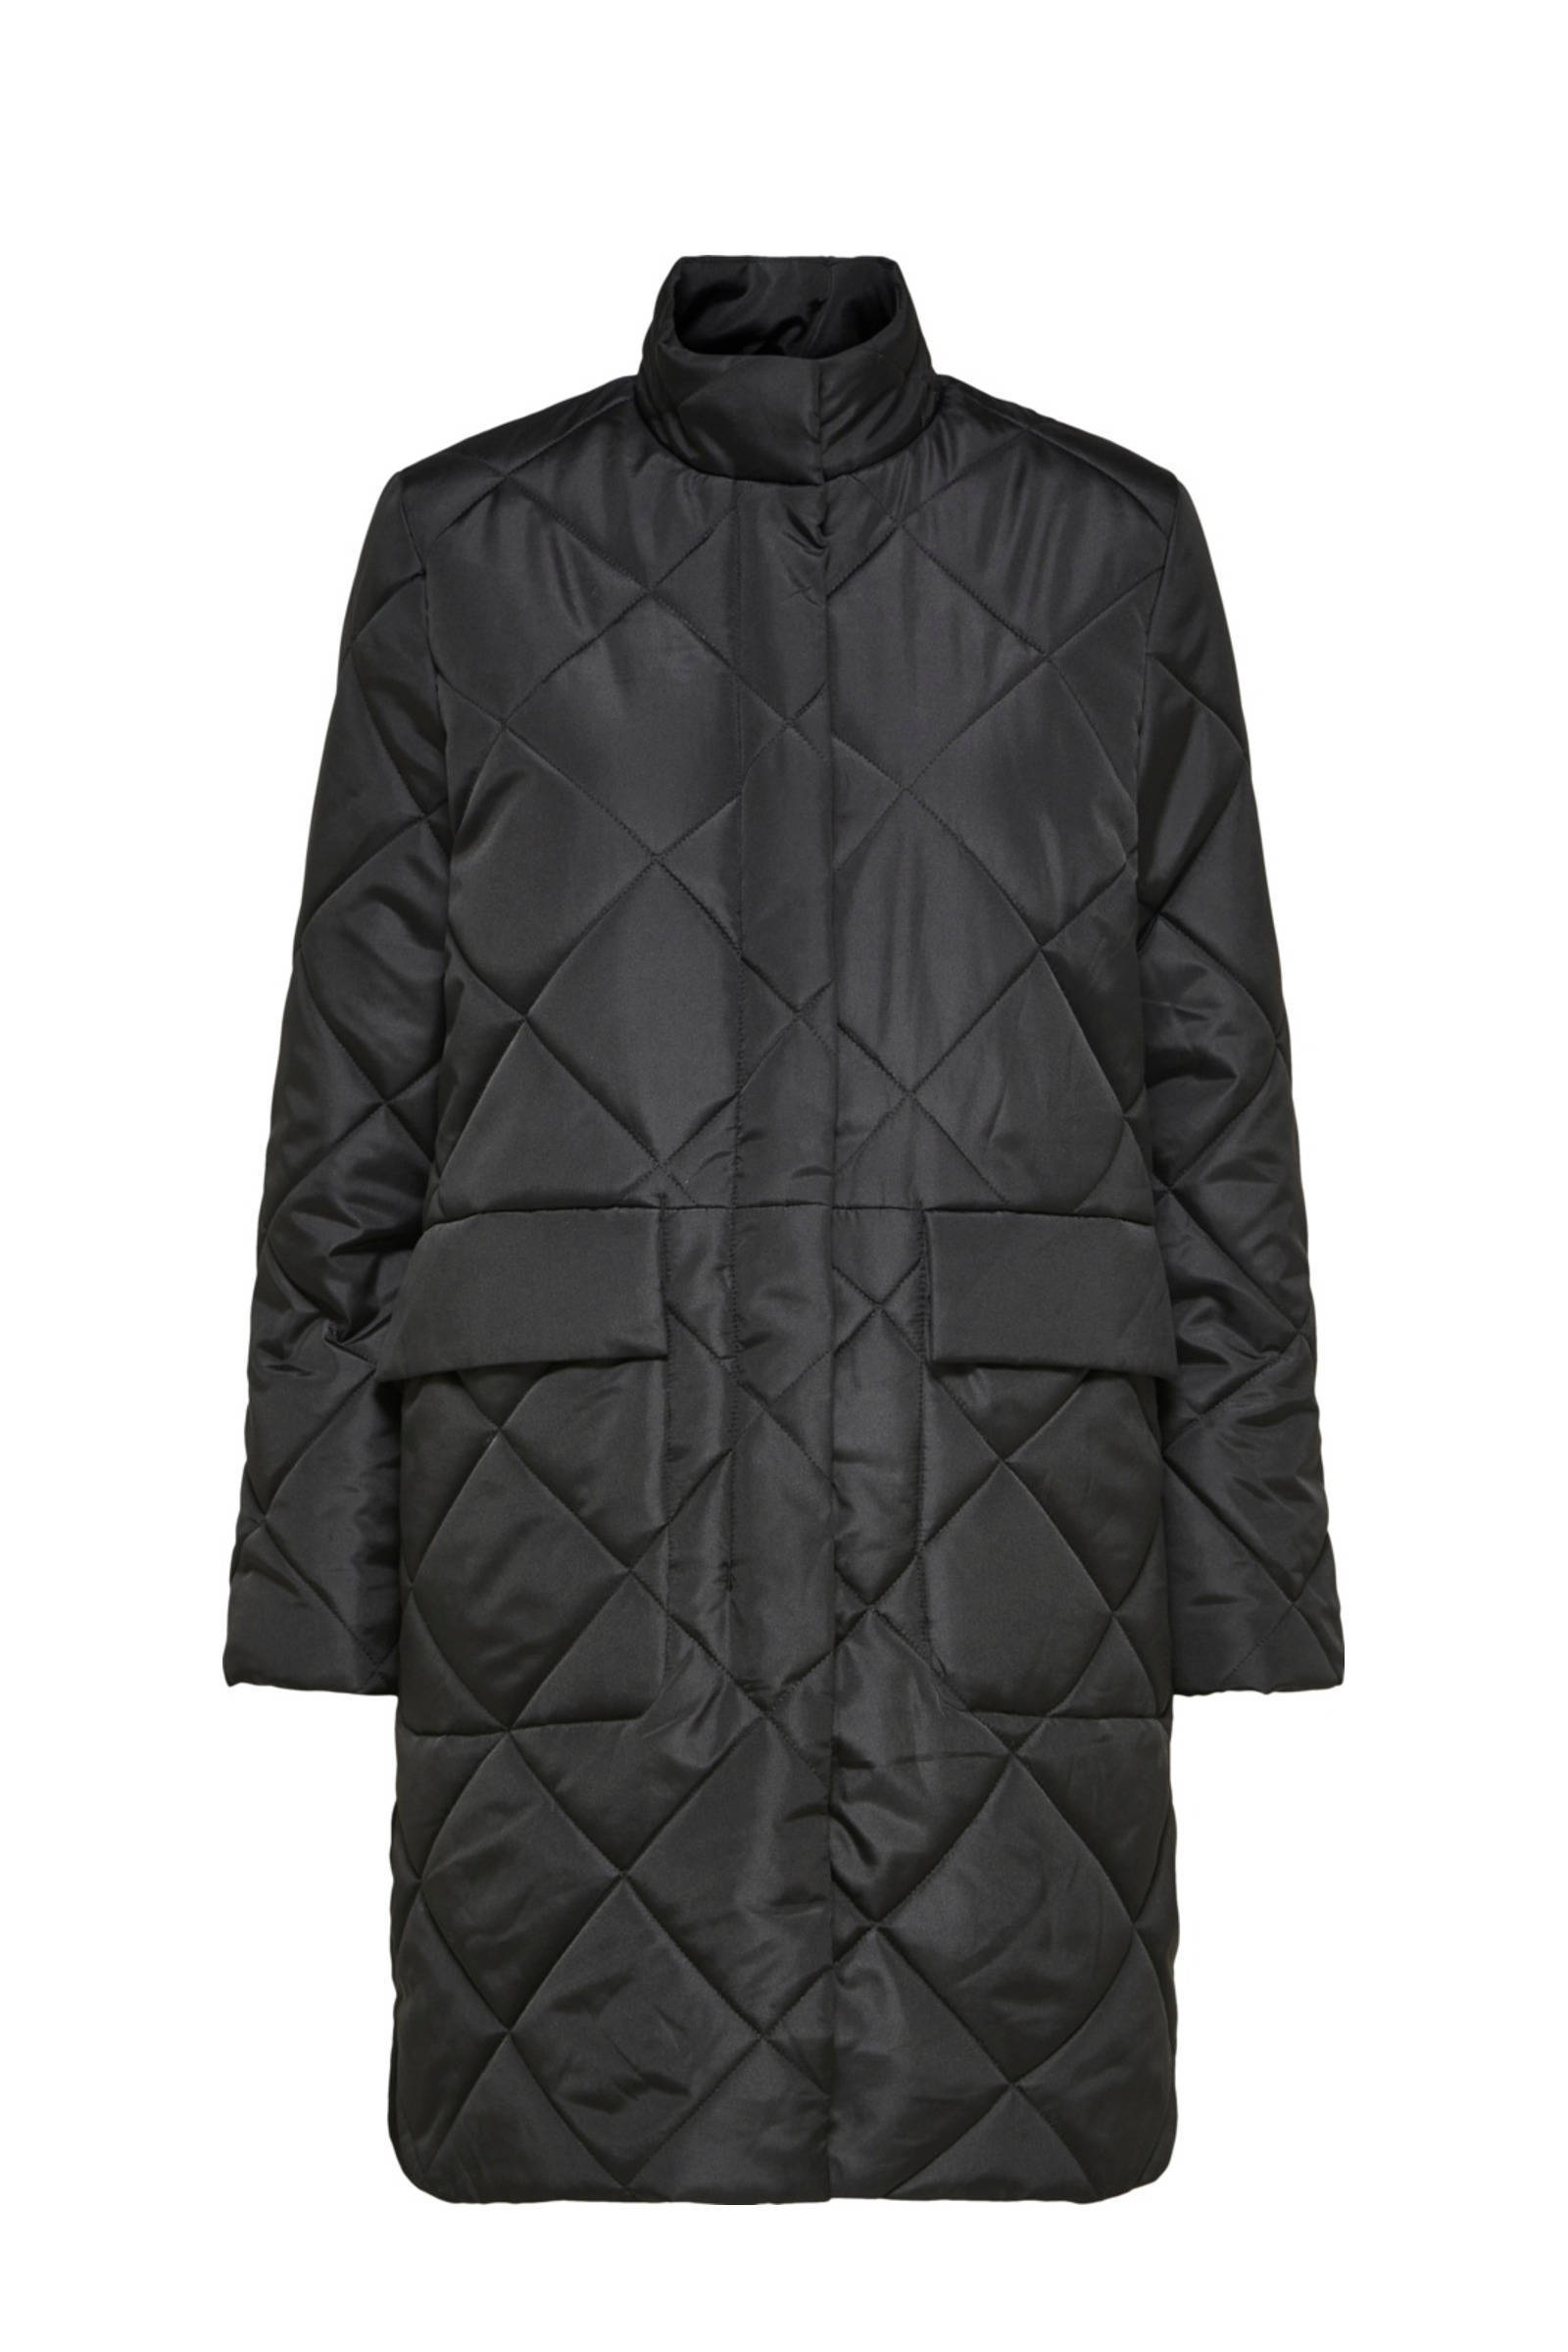 SELECTED FEMME gewatteerde jas SLFNADDY van gerecycled polyester zwart online kopen